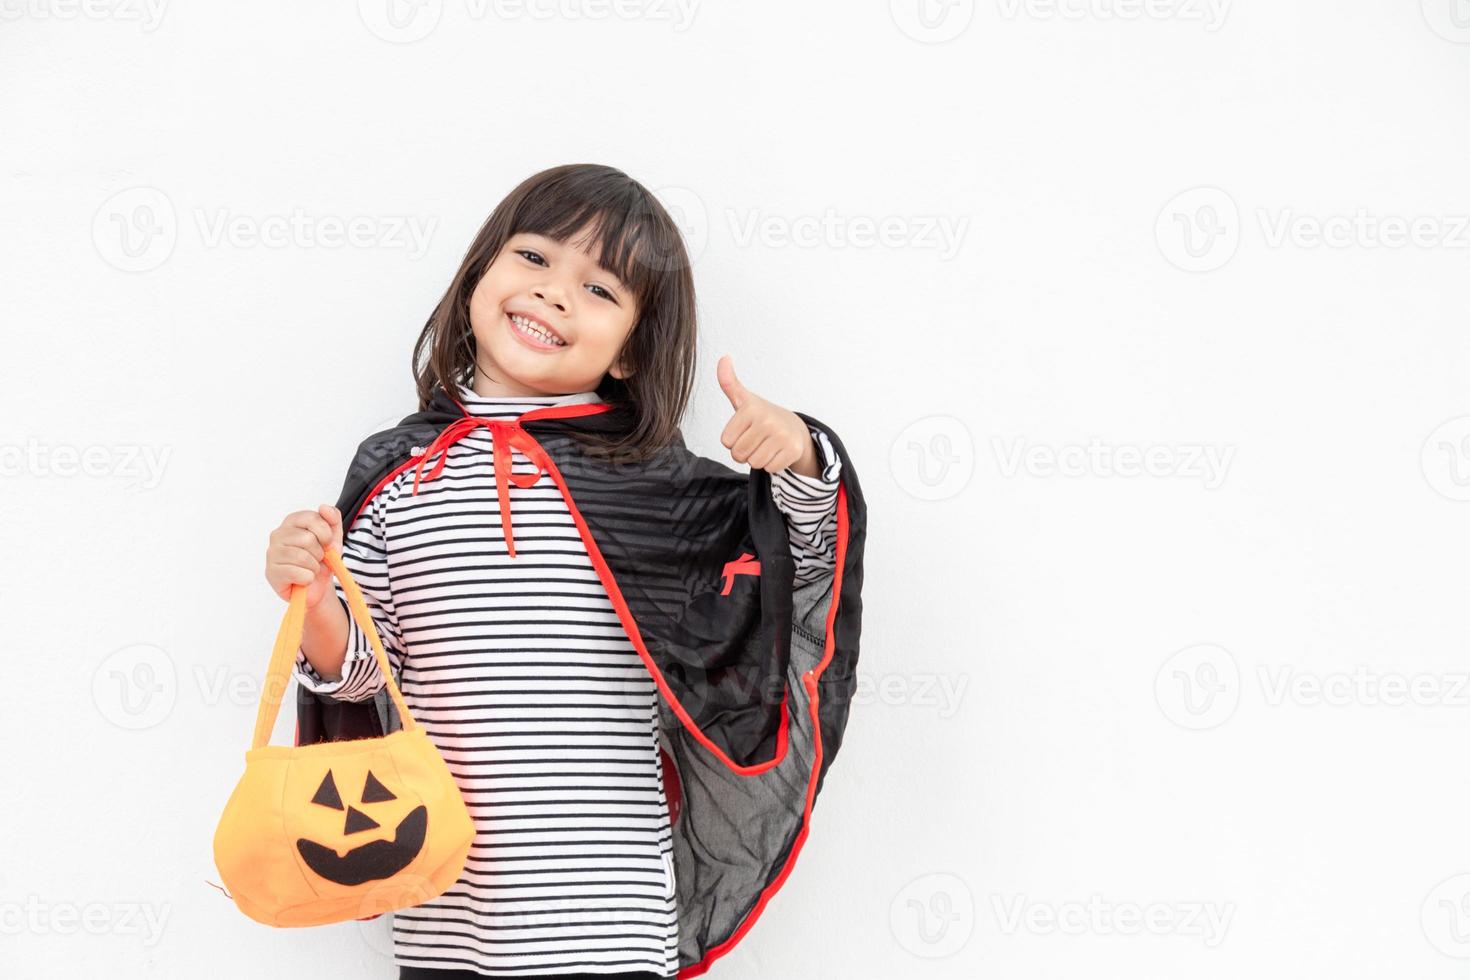 divertido concepto de niño de halloween, niña linda con disfraz de fantasma de halloween aterrador que sostiene un fantasma de calabaza naranja en la mano, sobre fondo blanco foto